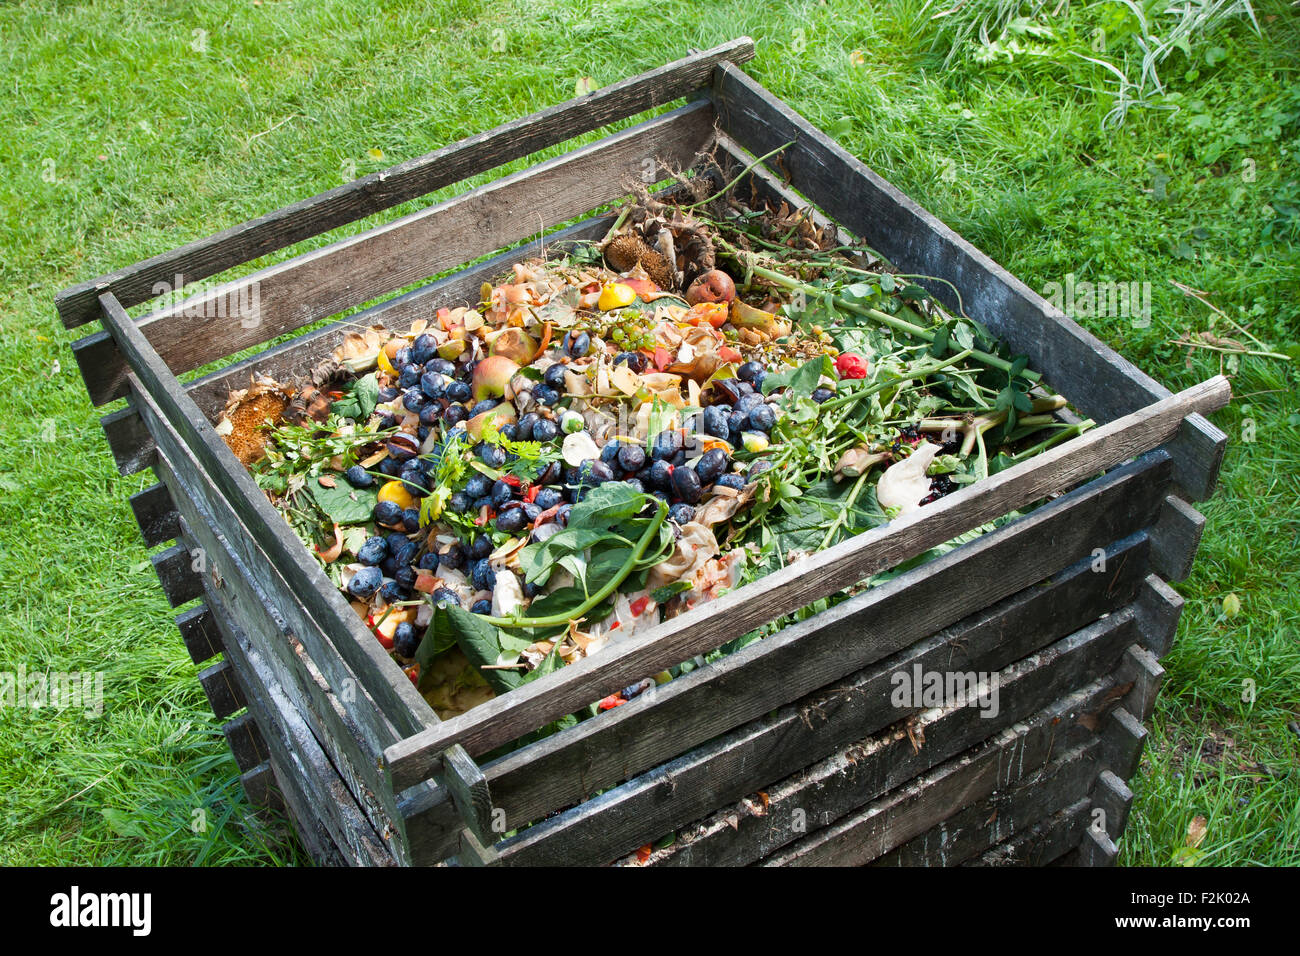 Il compost bin nel giardino. Riducendo in concime organico mucchio di marciume cucina frutta e scarti vegetali Foto Stock